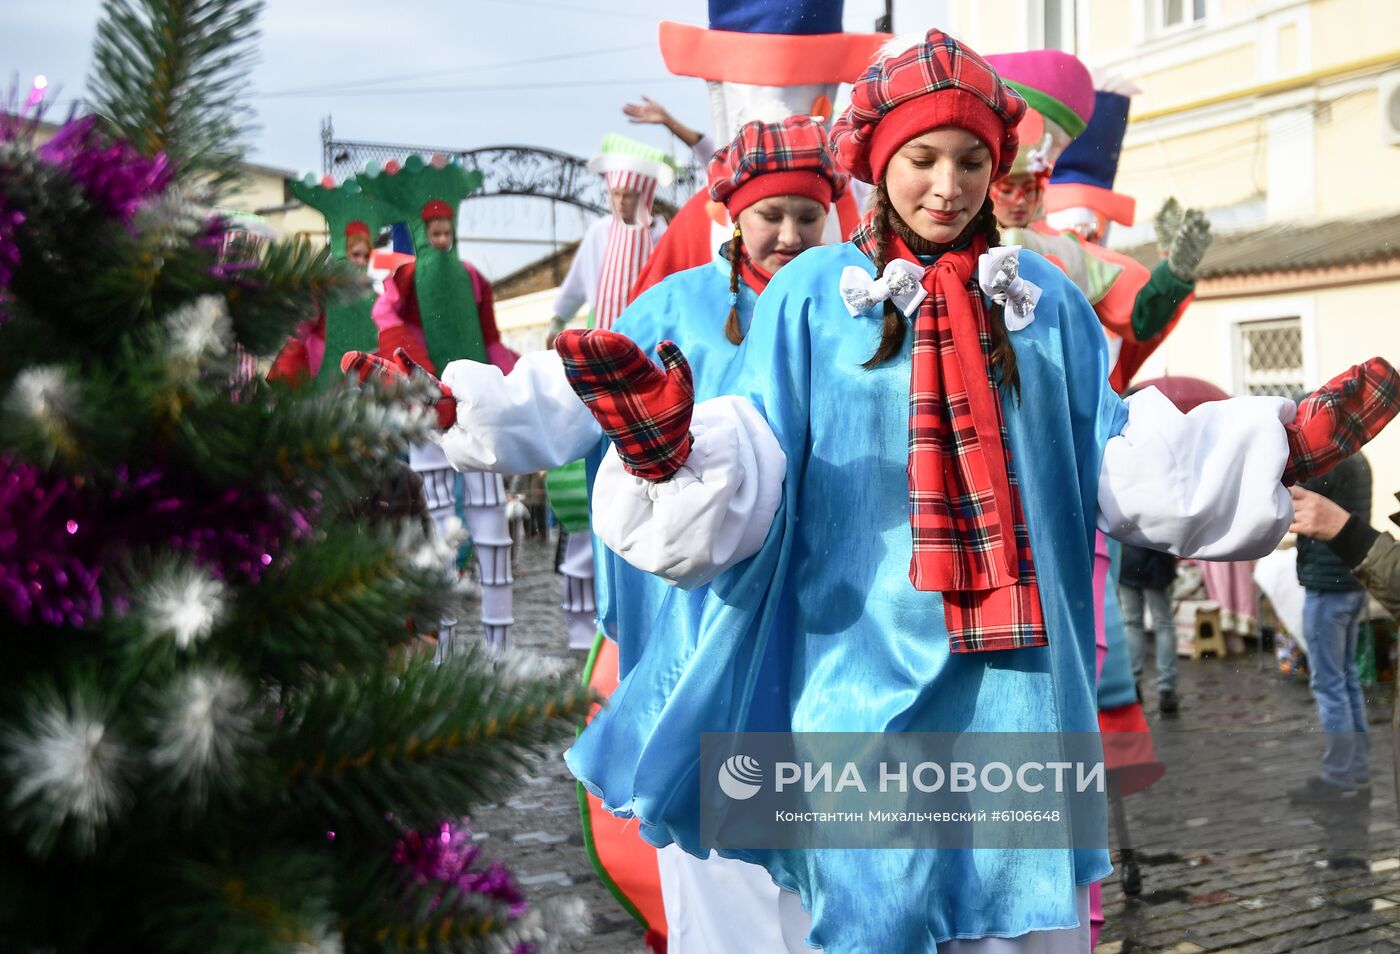 Фестиваль "Санта-Клаус отдыхает - на арене Дед Мороз" в Крыму